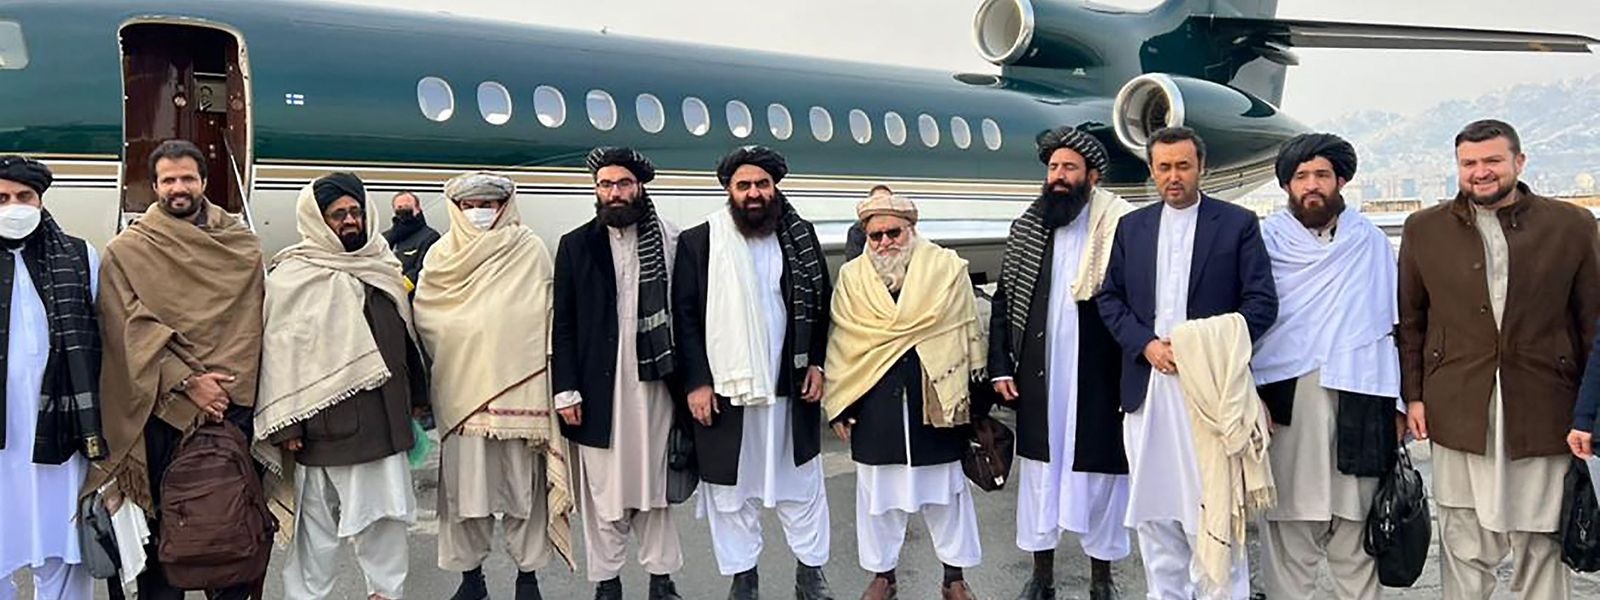 Delegação liderada pelo ministro dos Negócios Estrangeiros, Amir Khan Muttaqi, chegou a Oslo no sábado à noite num avião fretado pela Noruega.